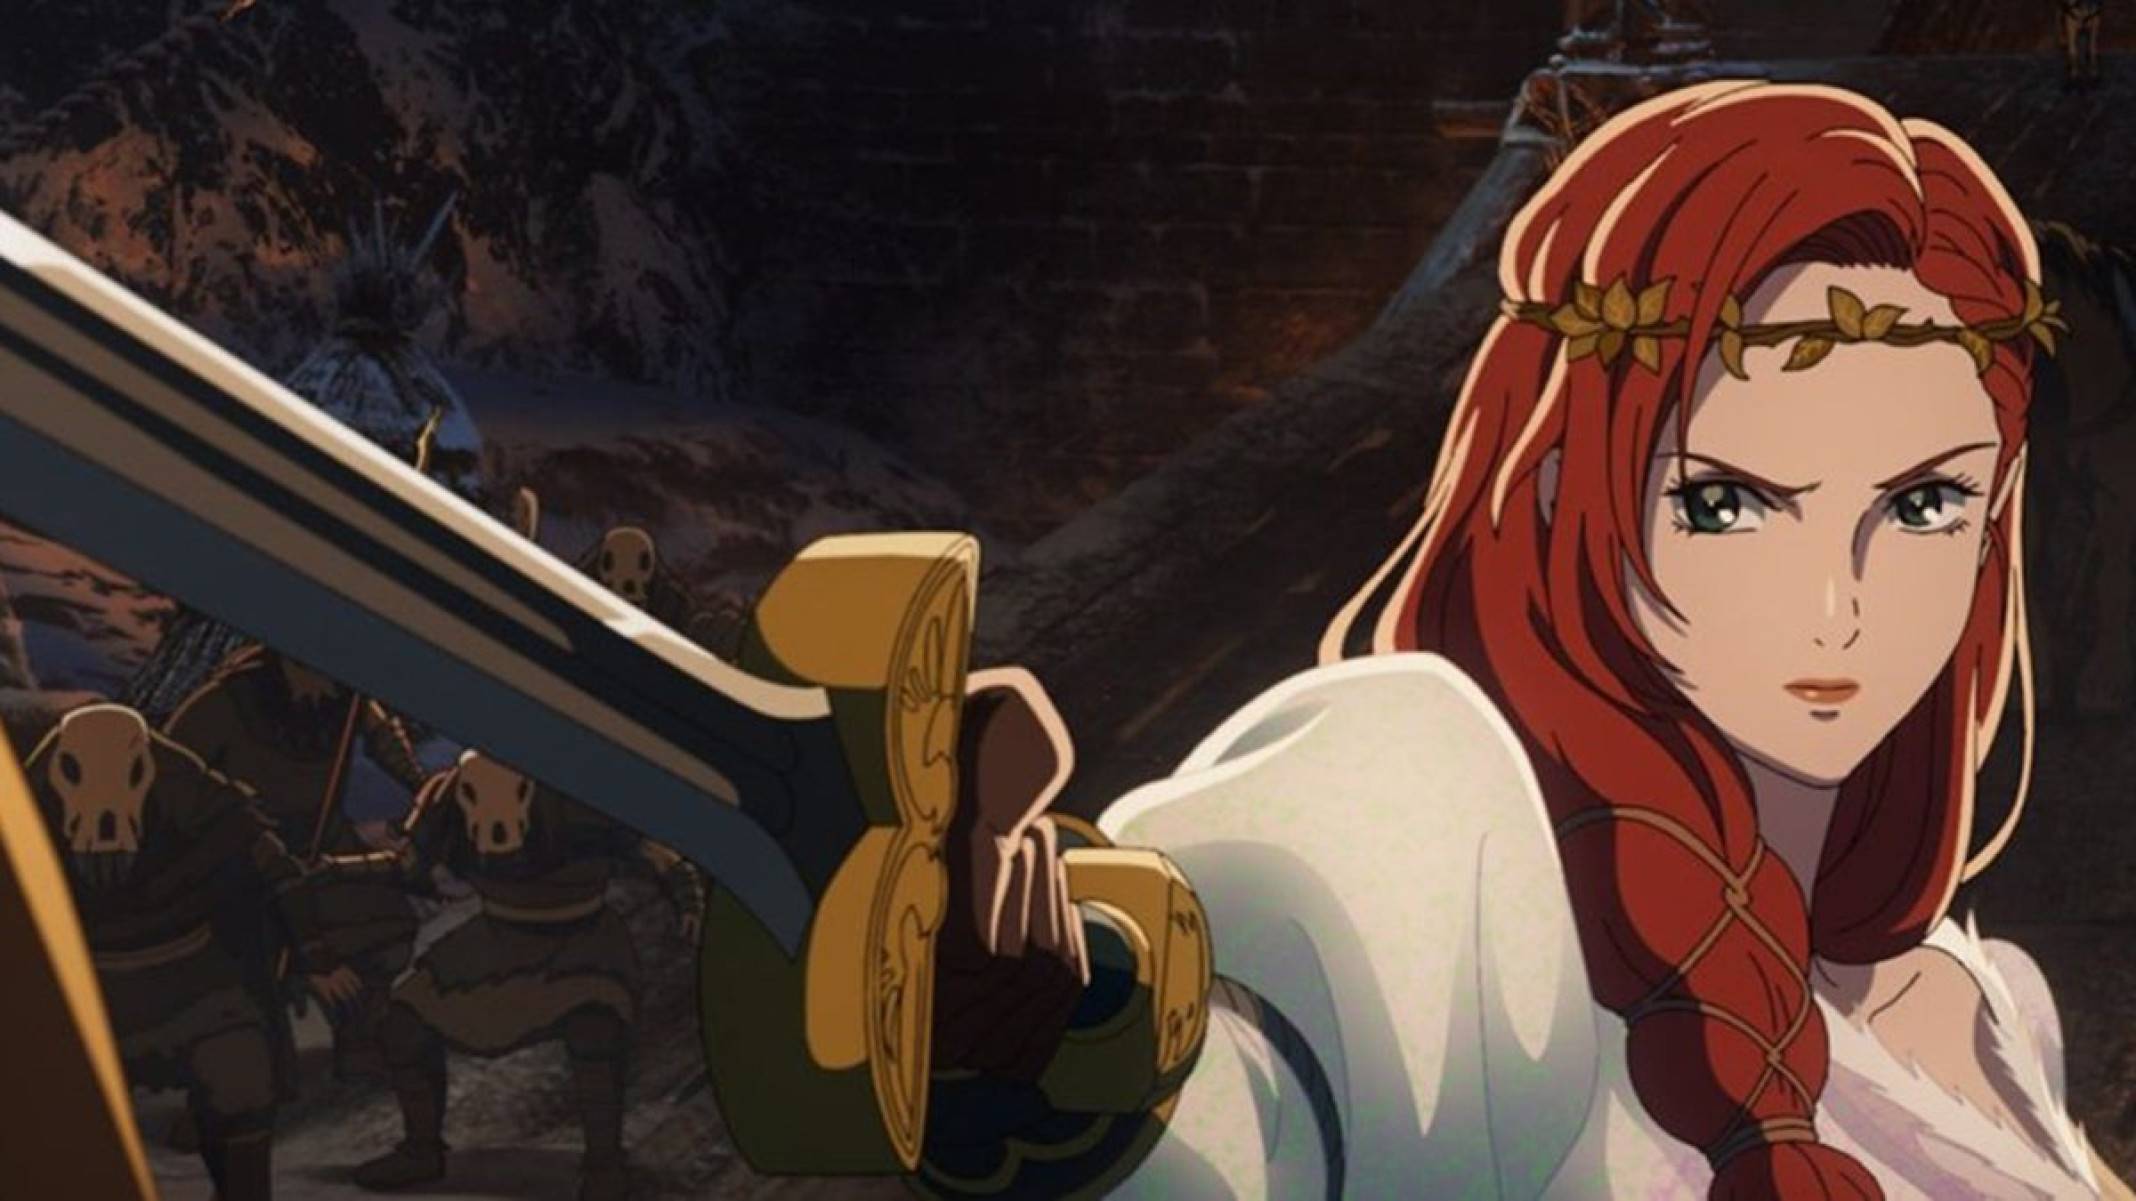 O Senhor dos Anéis: A Guerra dos Rohirrim | Anime revela imagens de Hèra